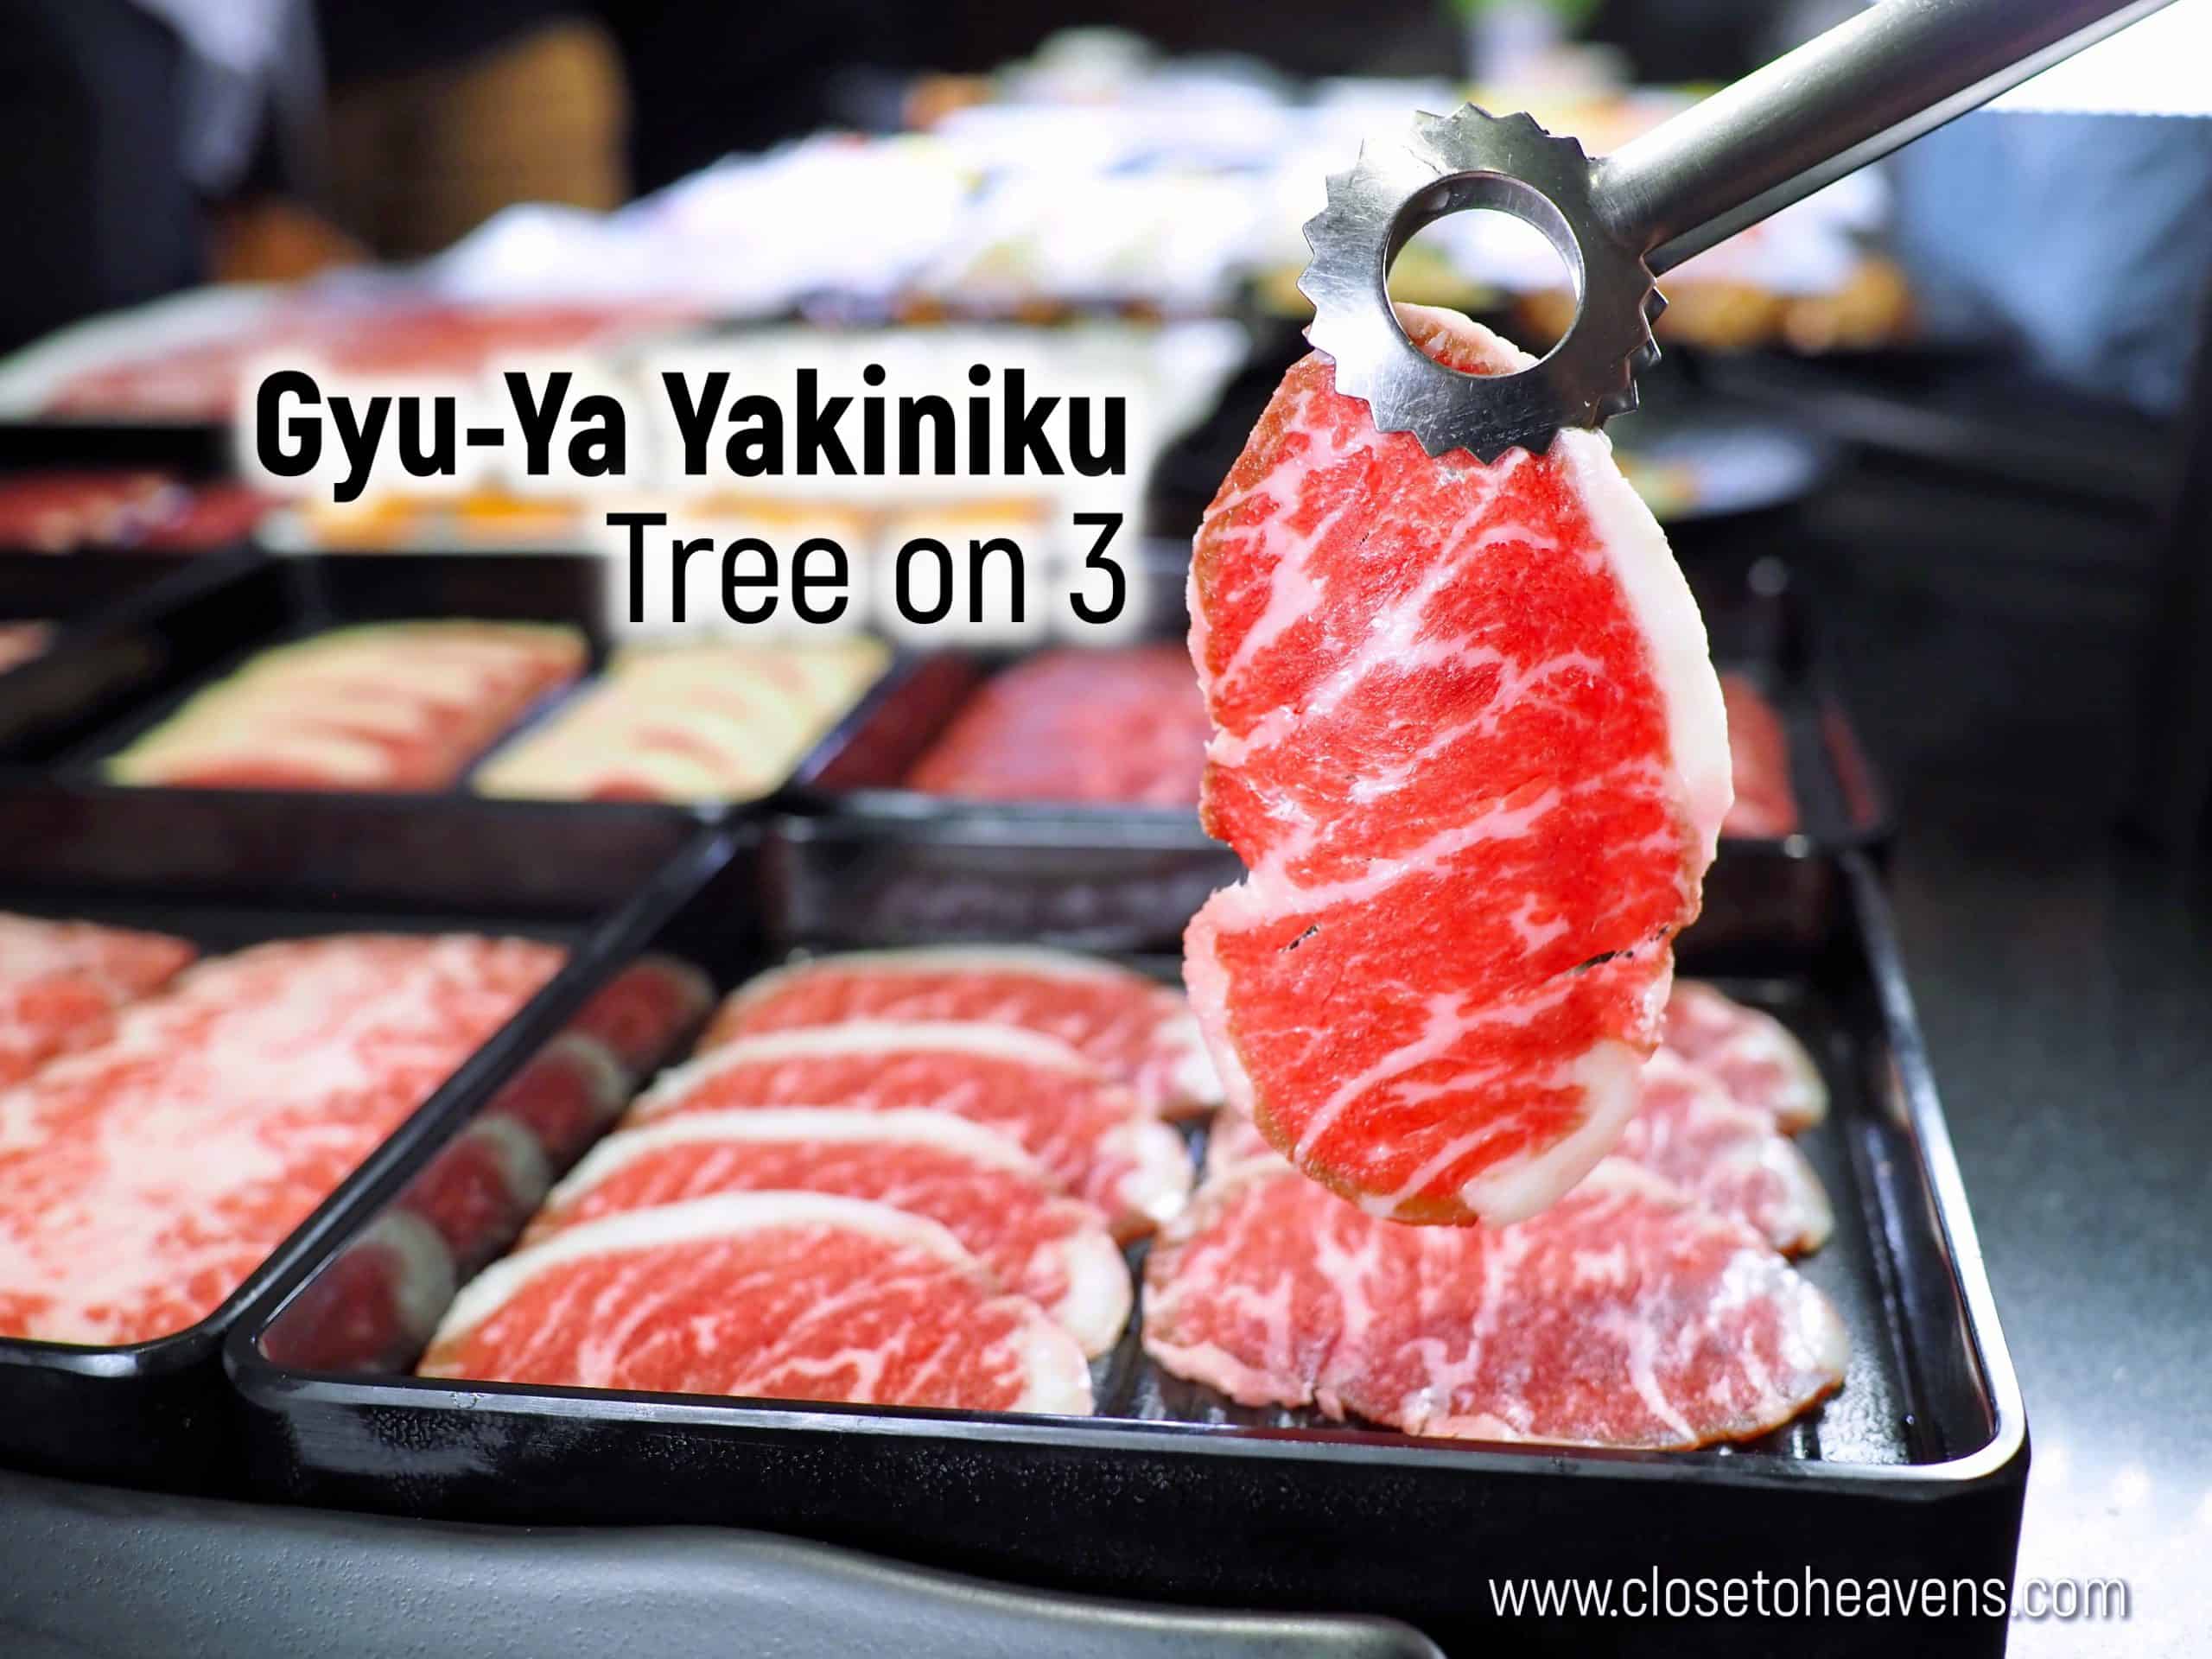 Gyu-Ya Yakiniku | Tree on 3 บุฟเฟ่ต์เนื้อย่าง กุ้งแม่น้ำไม่อั้น